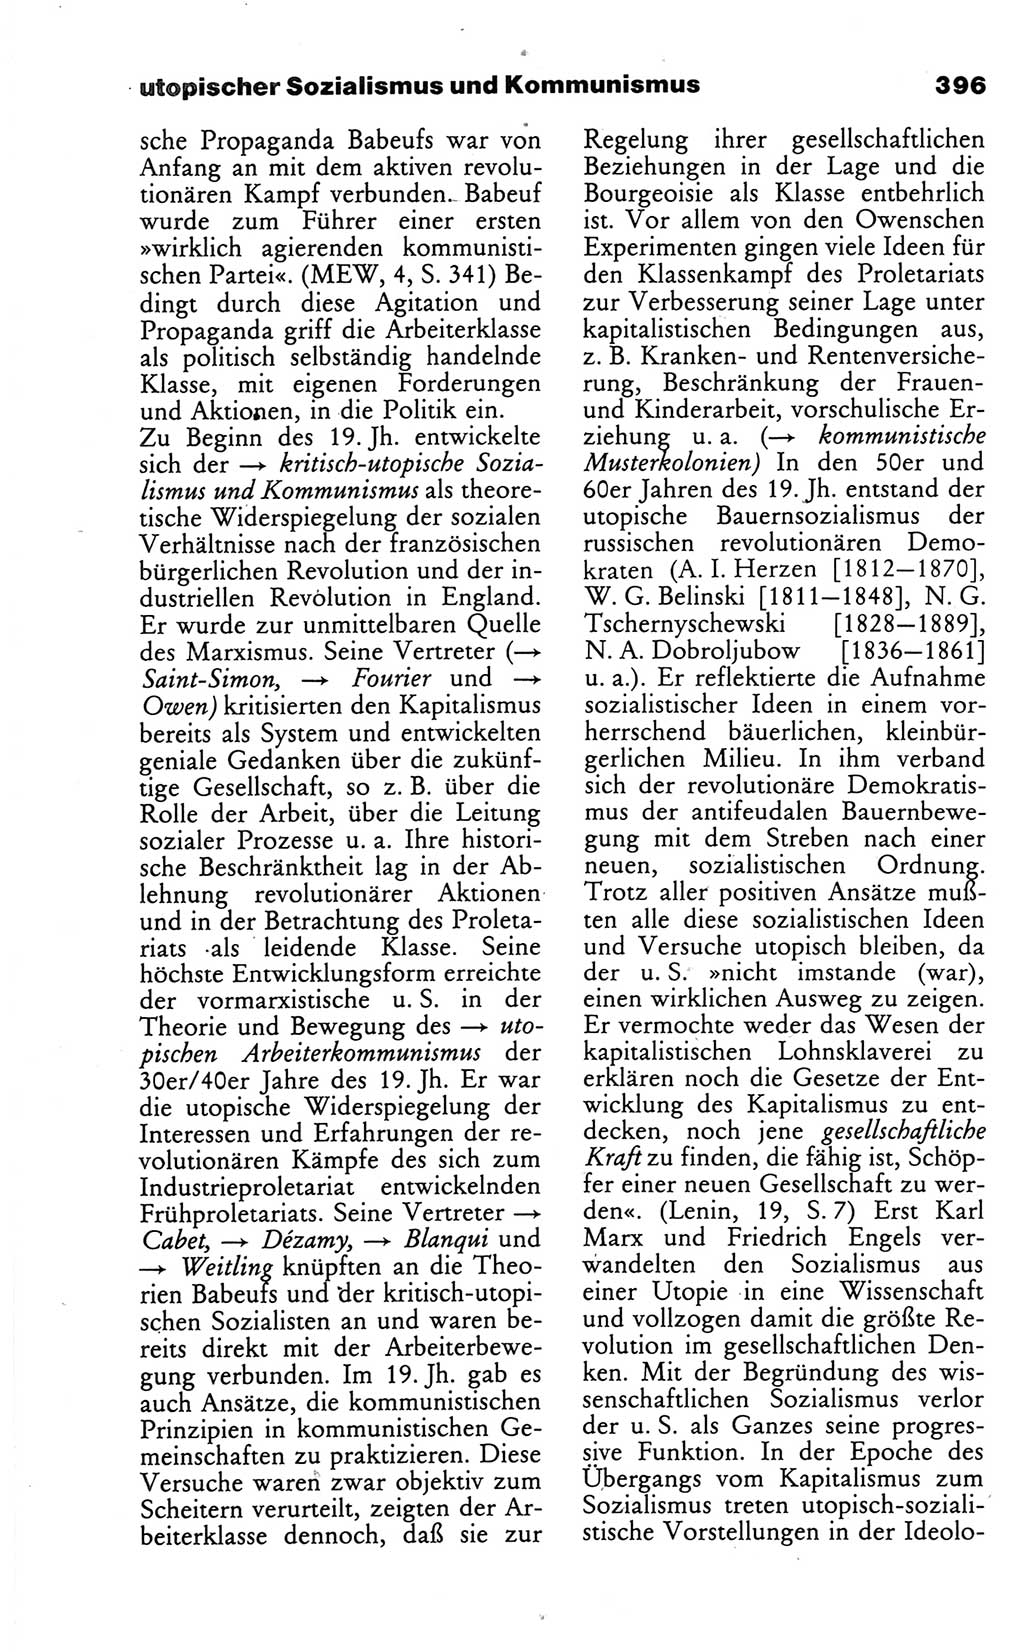 Wörterbuch des wissenschaftlichen Kommunismus [Deutsche Demokratische Republik (DDR)] 1986, Seite 396 (Wb. wiss. Komm. DDR 1986, S. 396)